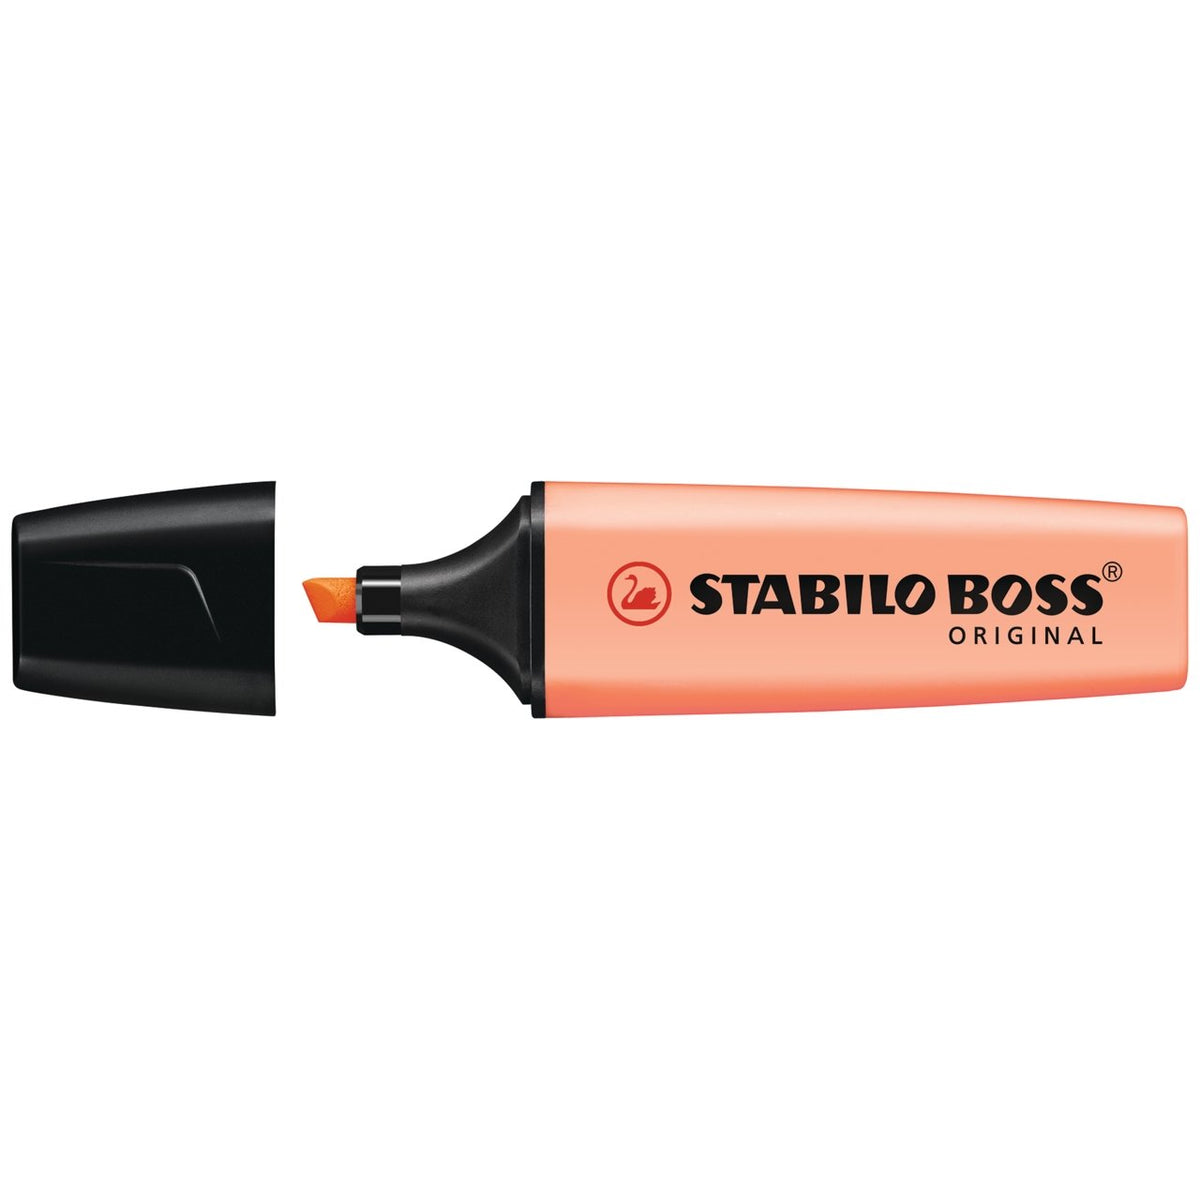 Stabilo BOSS Original Highlighter - Creamy Peach - merriartist.com